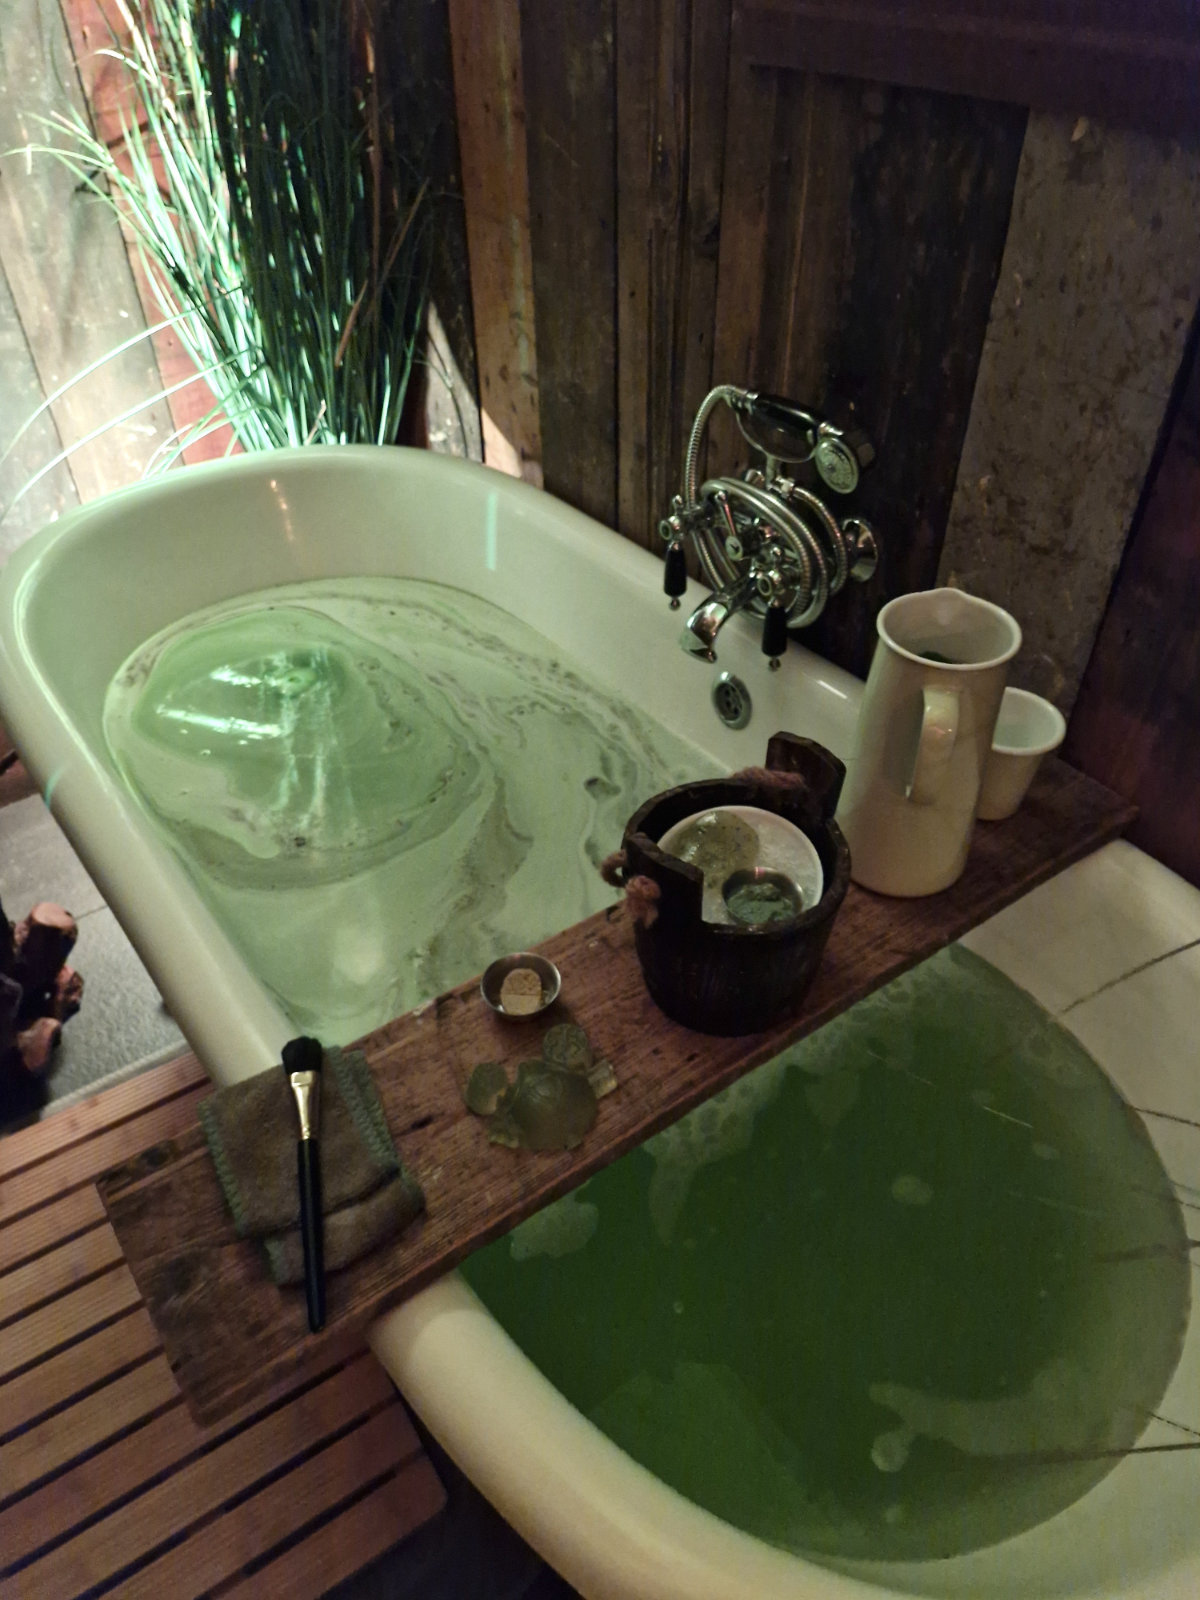 Lush x Shrek bathtub experience